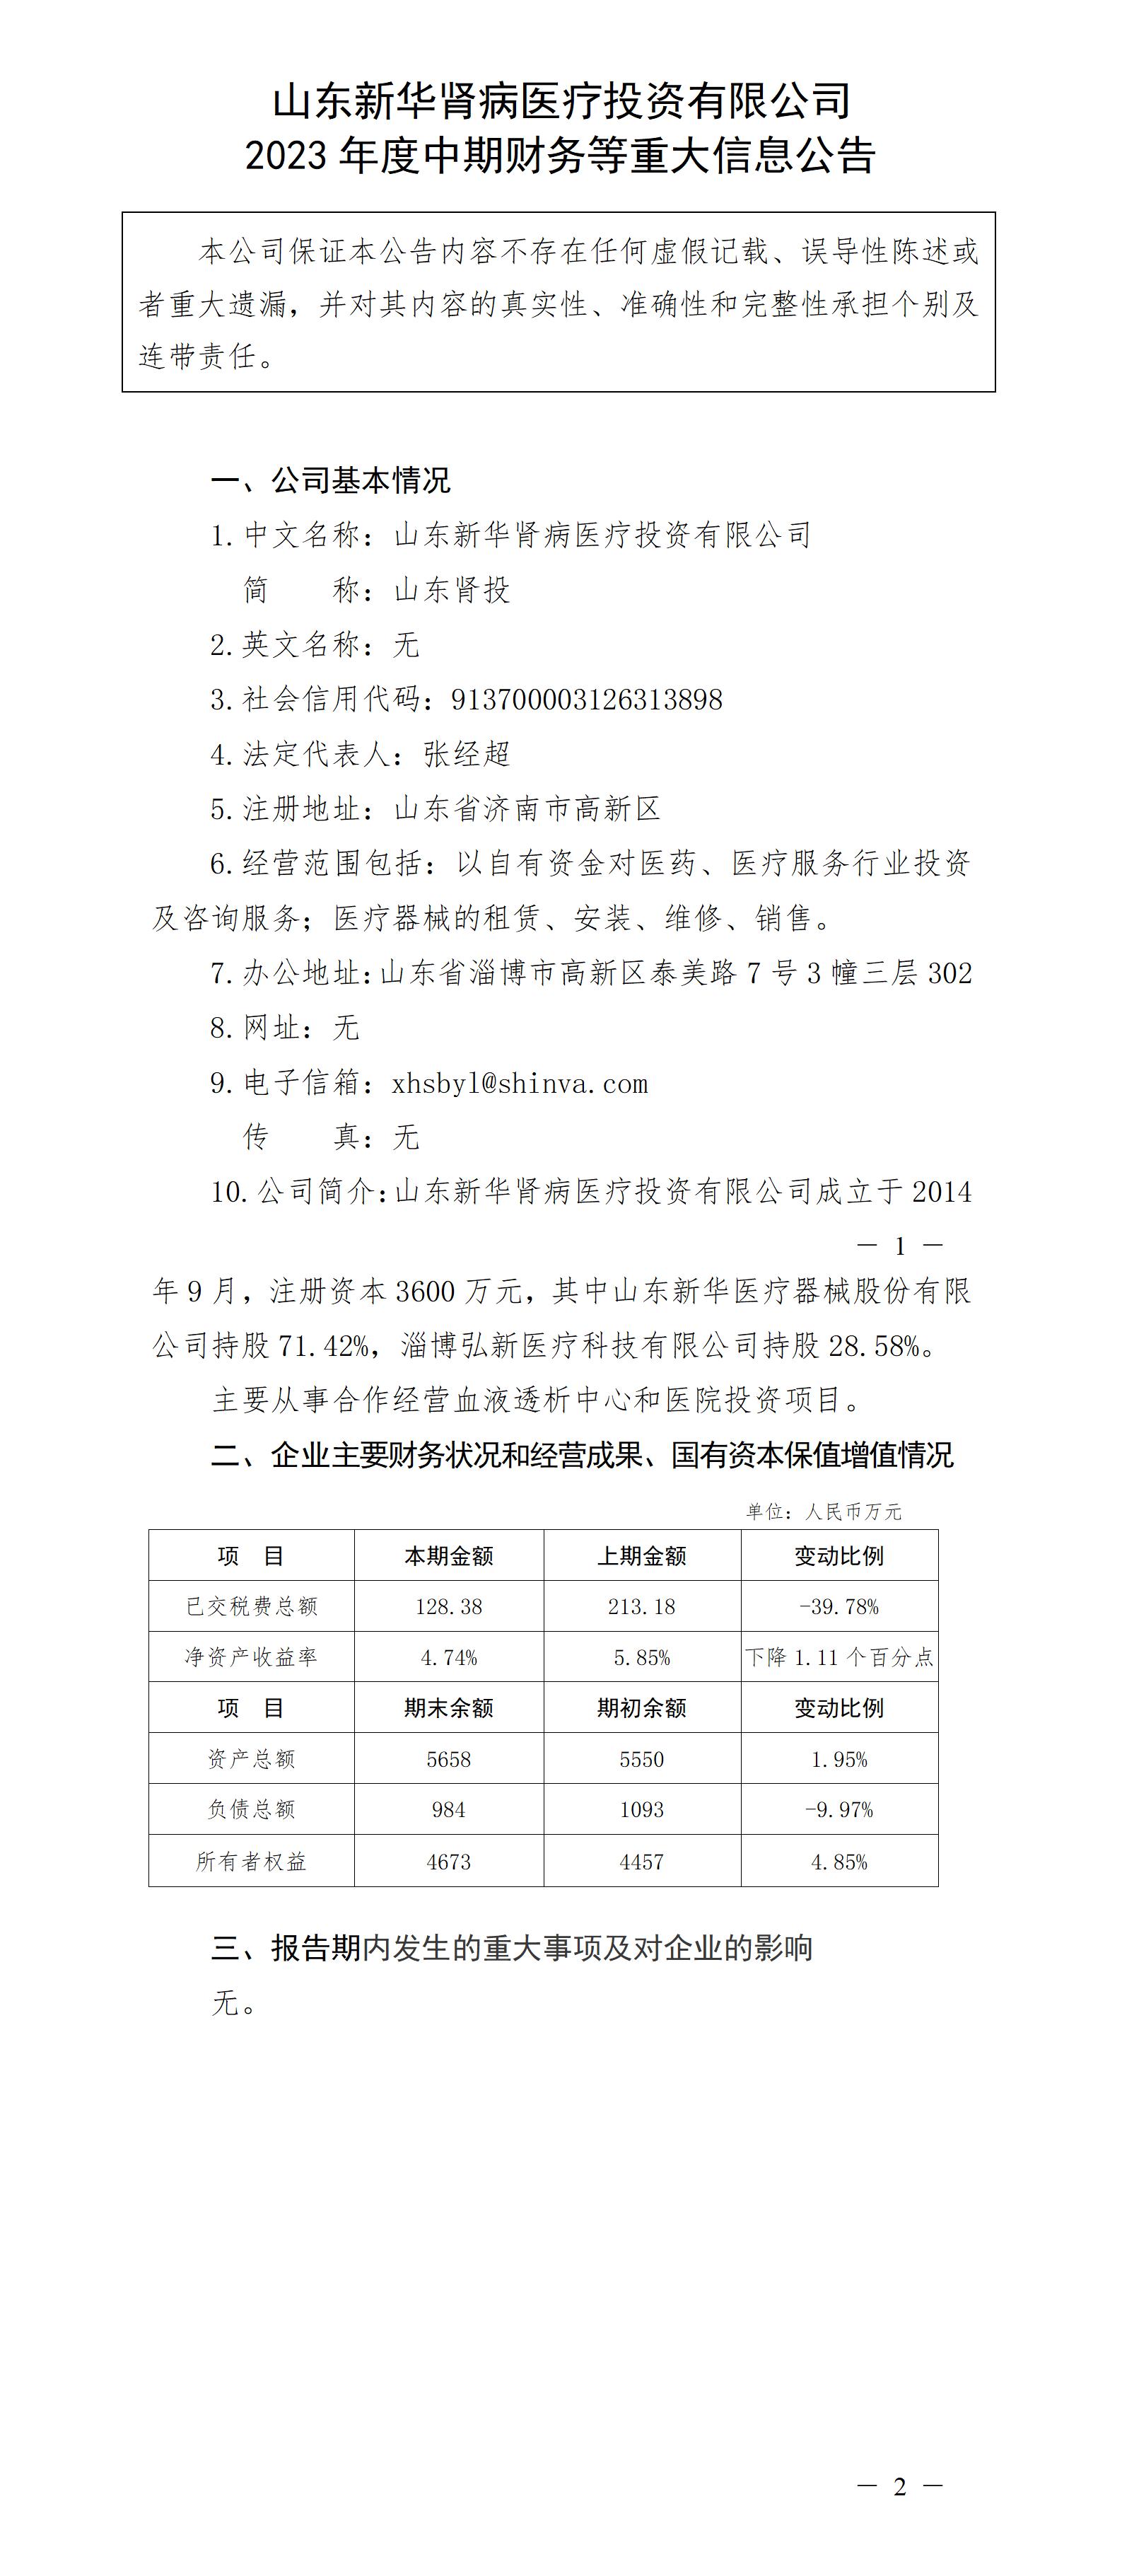 山東新華腎病醫療投資有限公司2023年度中期財務等重大信息公告_01.jpg